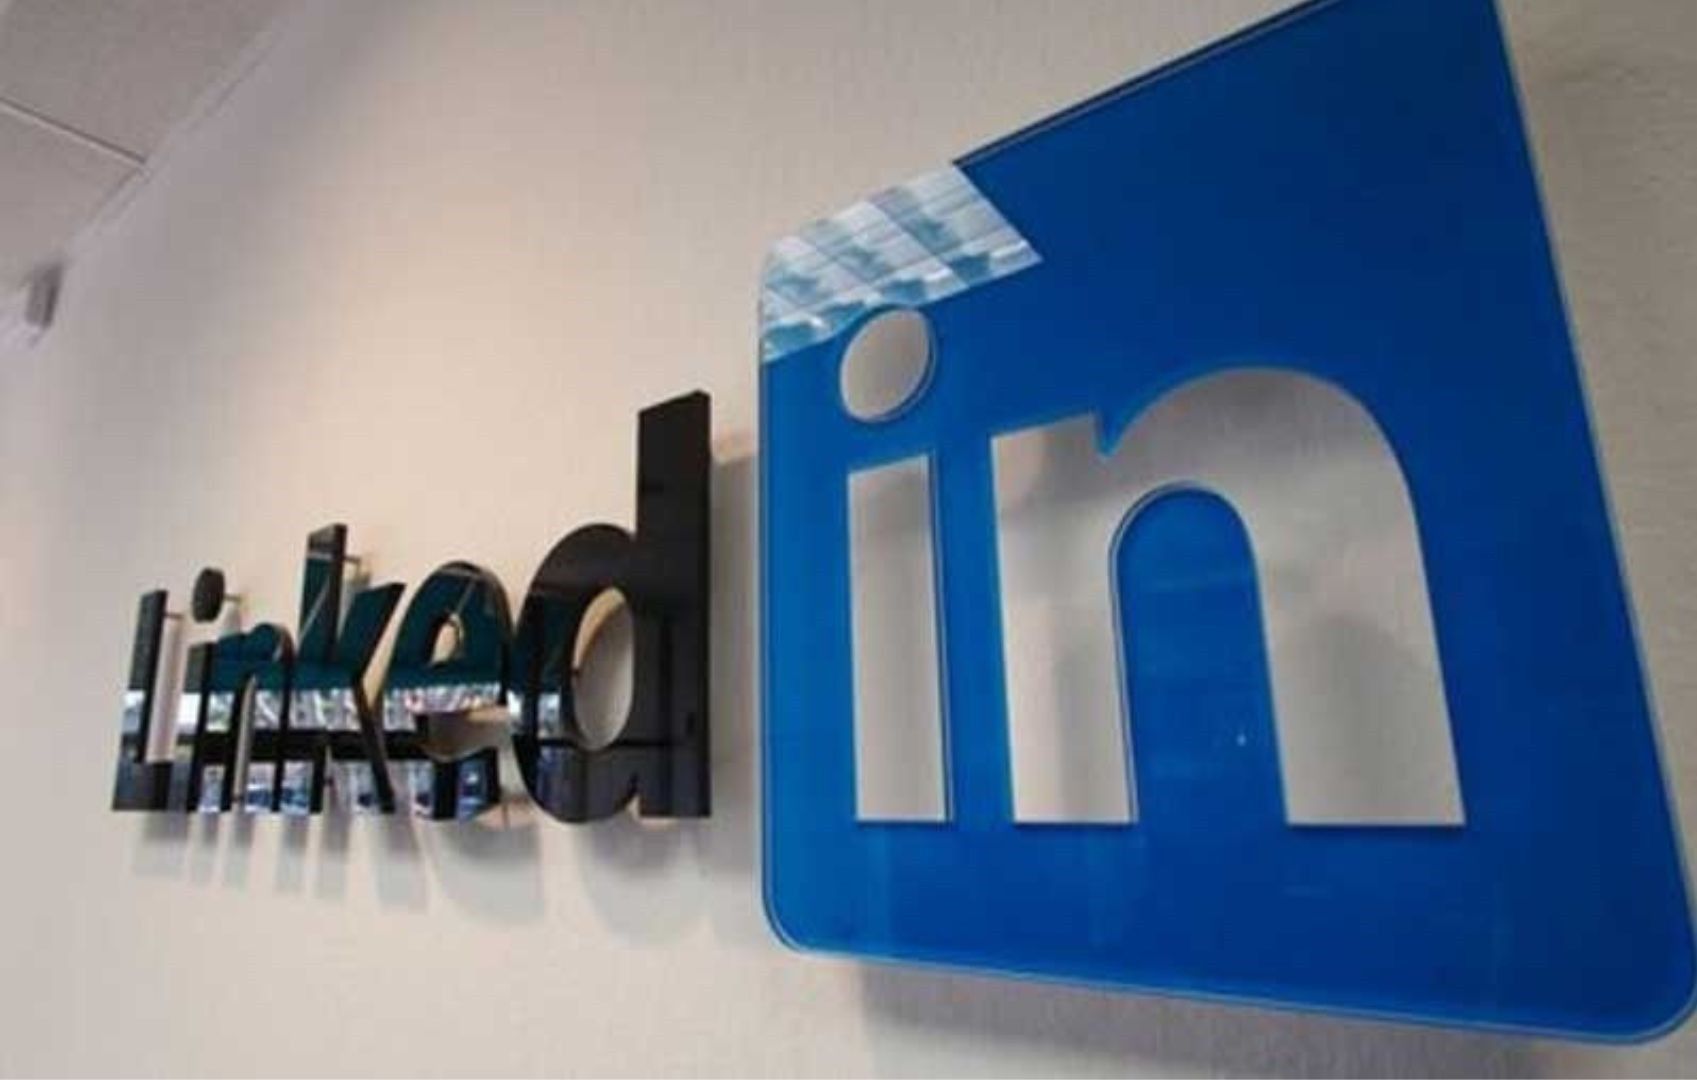 Several LinkedIn users practice dating on platform